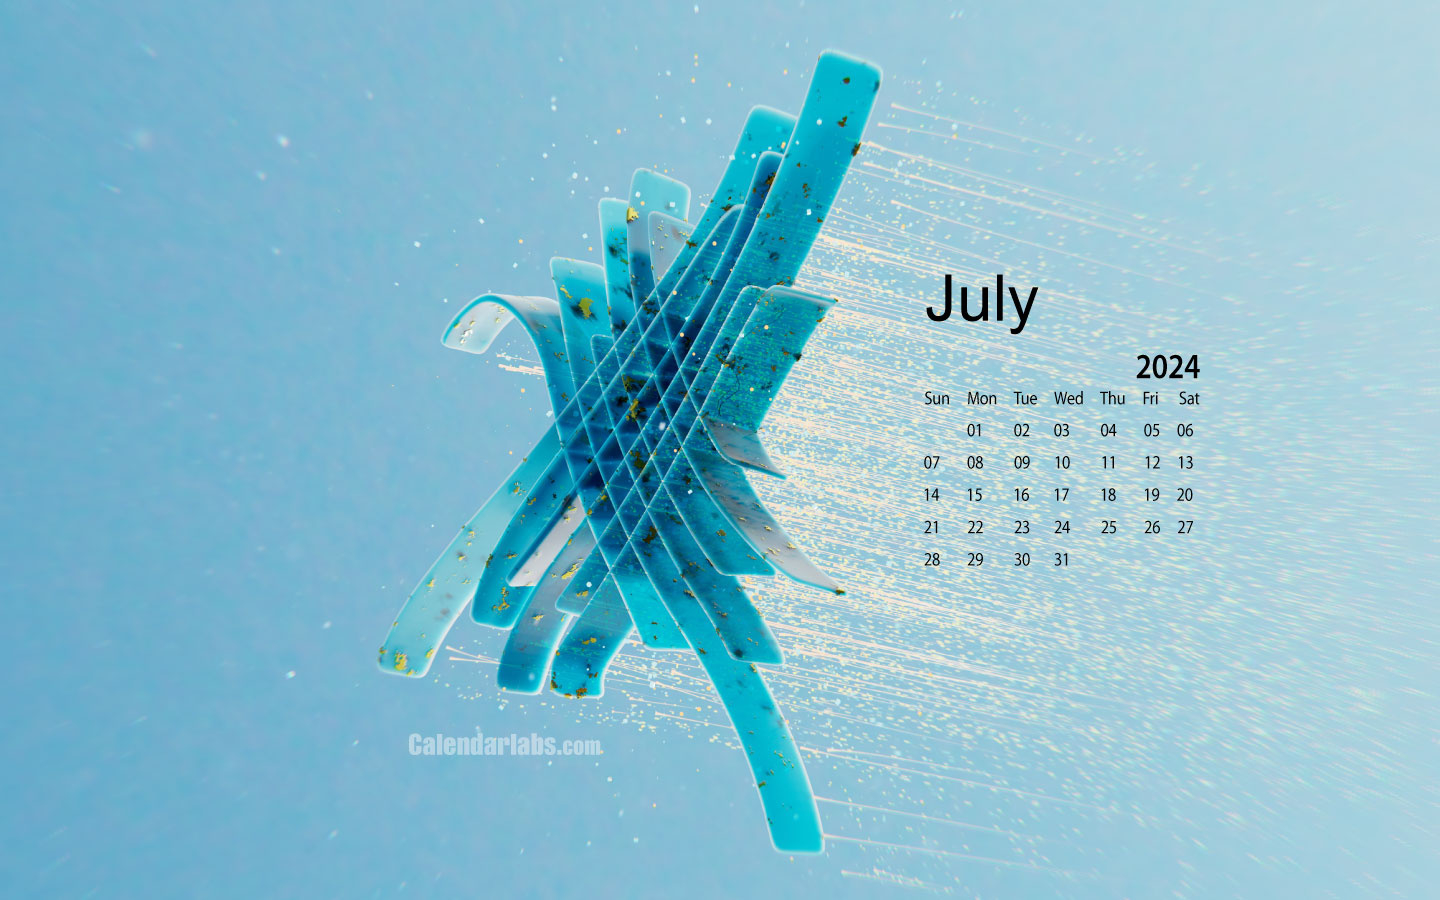 July 2024 Desktop Wallpaper Calendar - Calendarlabs throughout July Wallpaper Calendar 2024